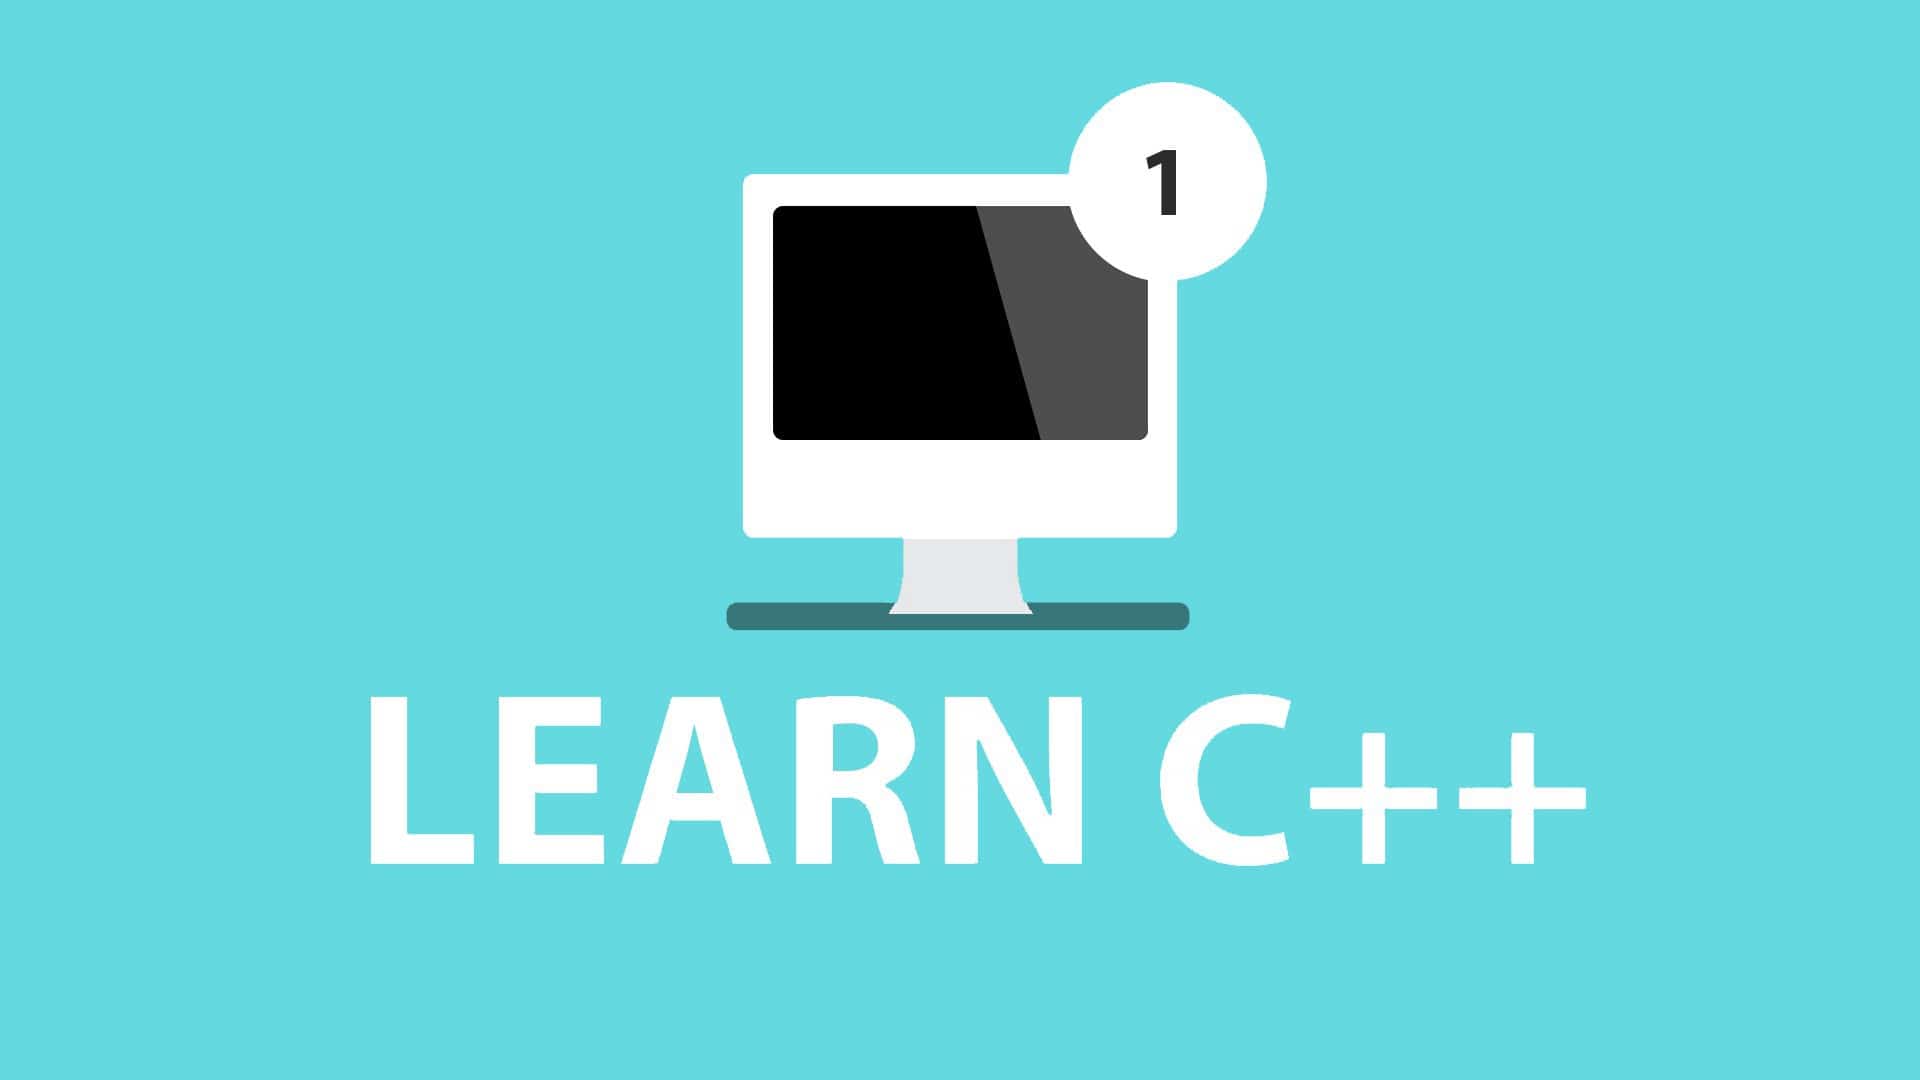 Bí quyết học lập trình c++ cơ bản hiệu quả cho người mới bắt đầu